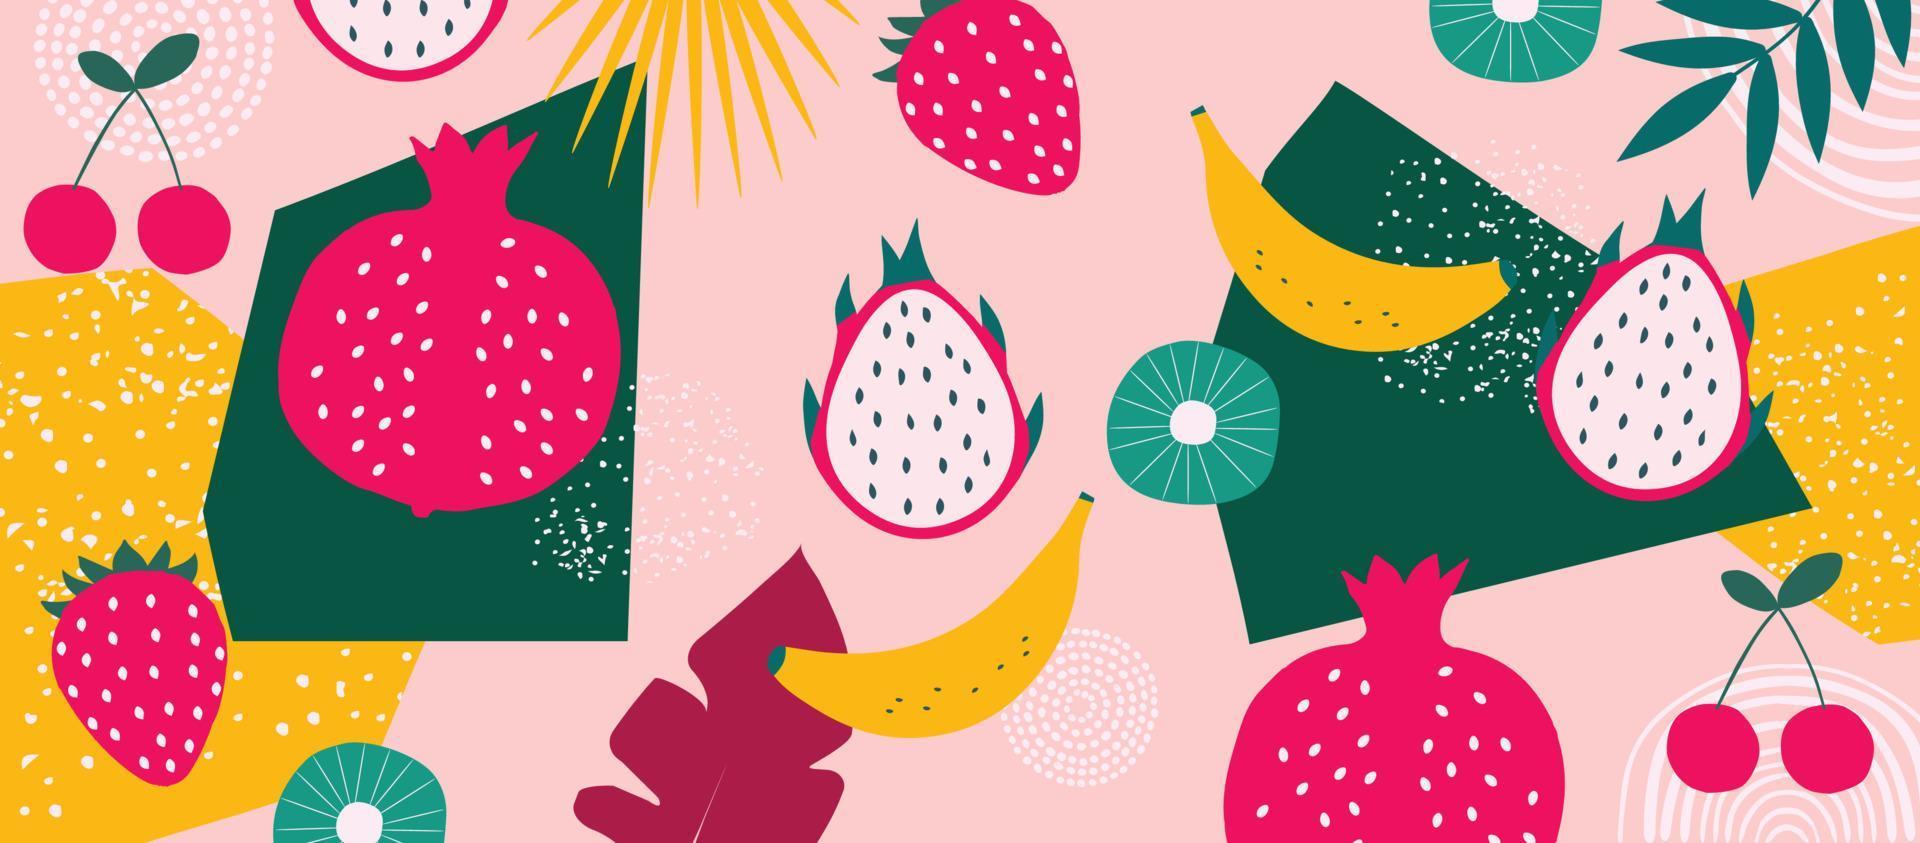 cartel de frutas exóticas. diseño tropical de verano con frutas, plátano, fresa, granada, pitaya, cereza, mezcla de colores kiwi. dieta saludable, ilustración de vector de fondo de comida vegana